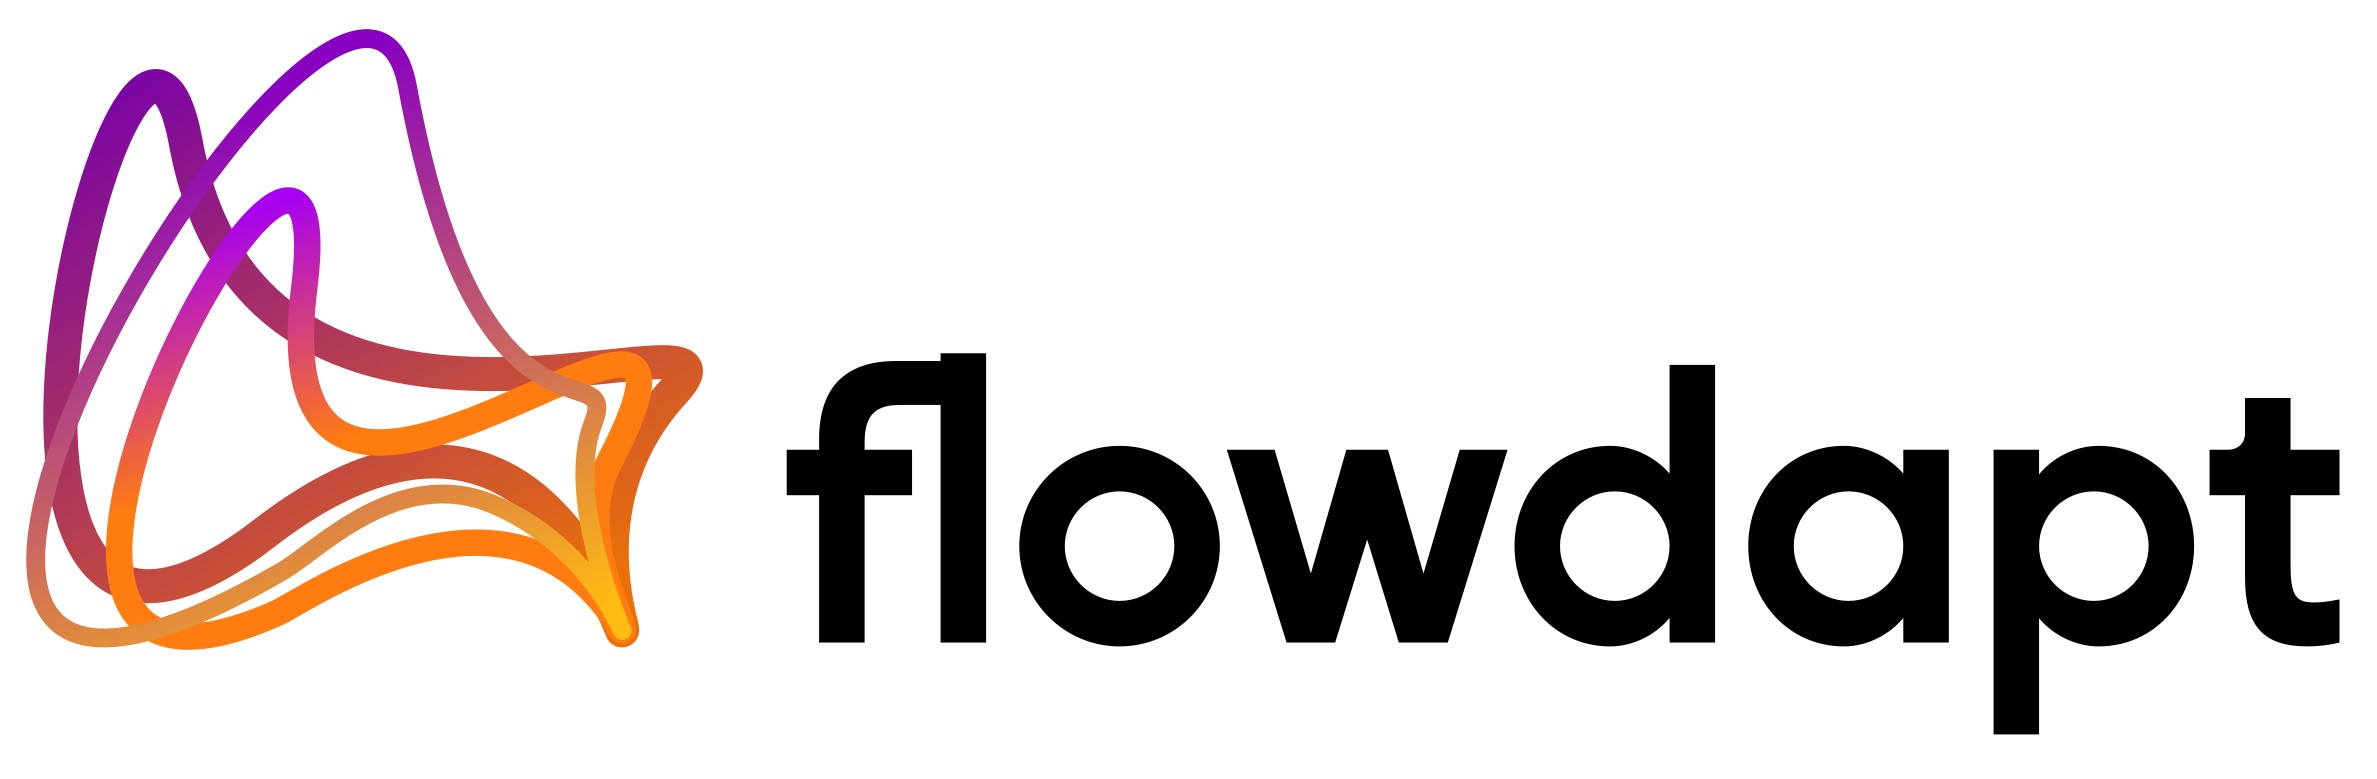 Flowdapt logo